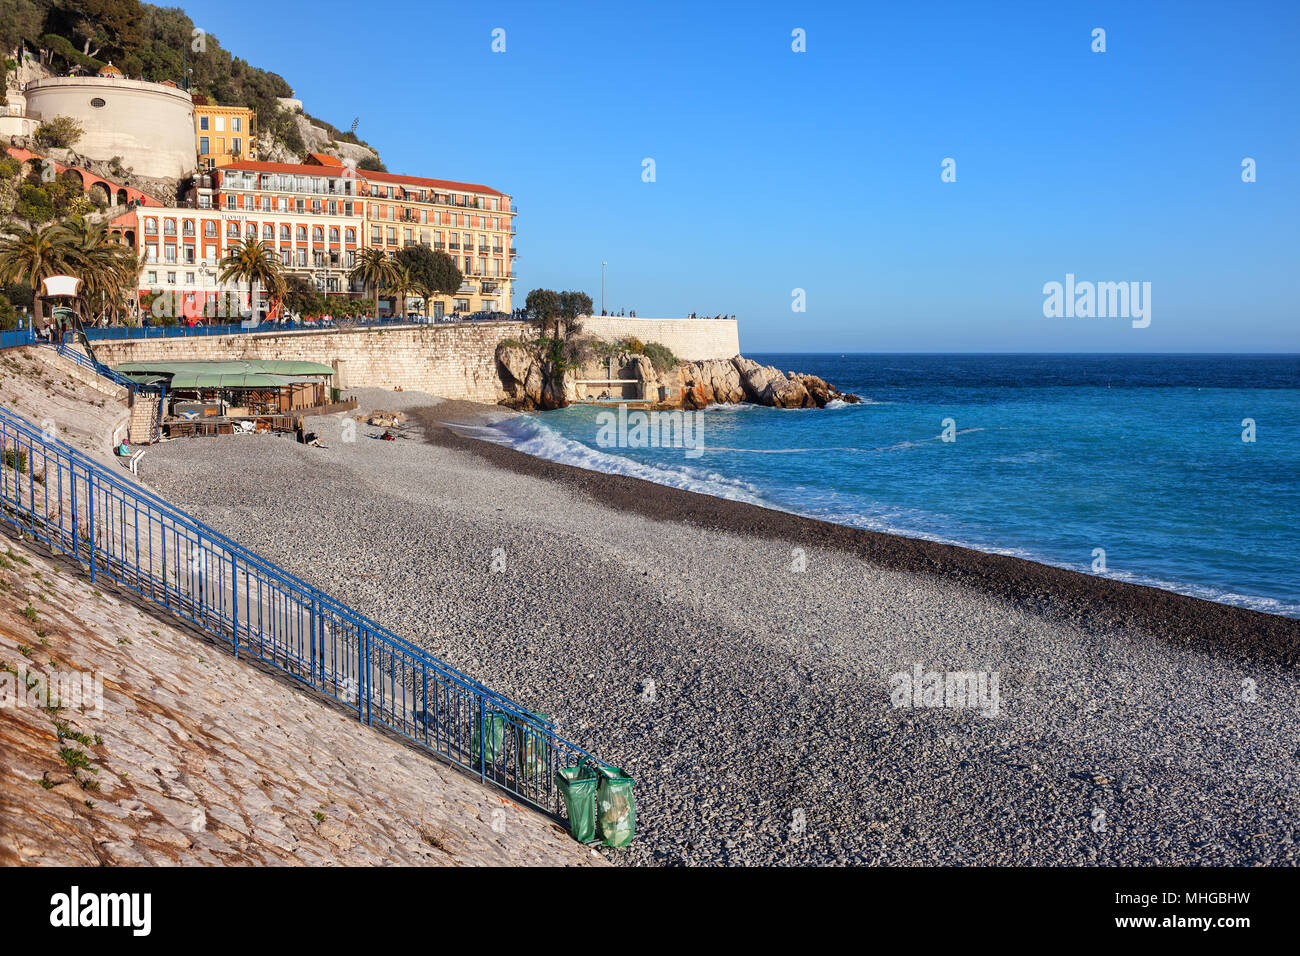 La città di Nizza in Francia, spiaggia sulla Costa Azzurra (Cote d'Azur) al Mare Mediterraneo Foto Stock